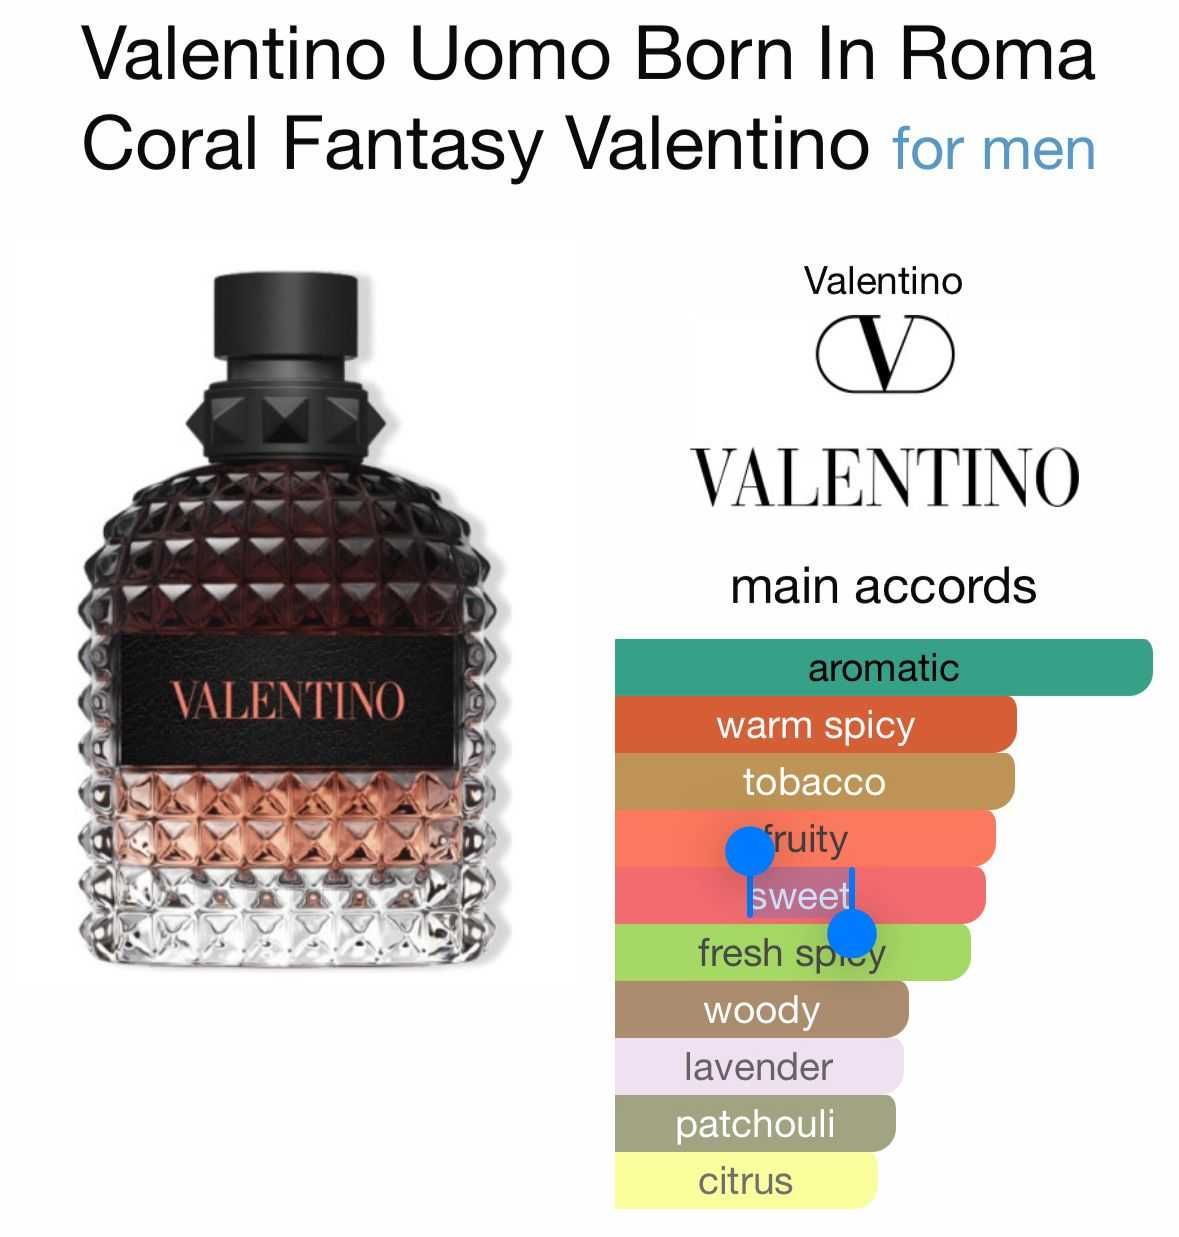 Valentino Uomo Born in Roma Coral Fantasy 50ml sigilat 100% original